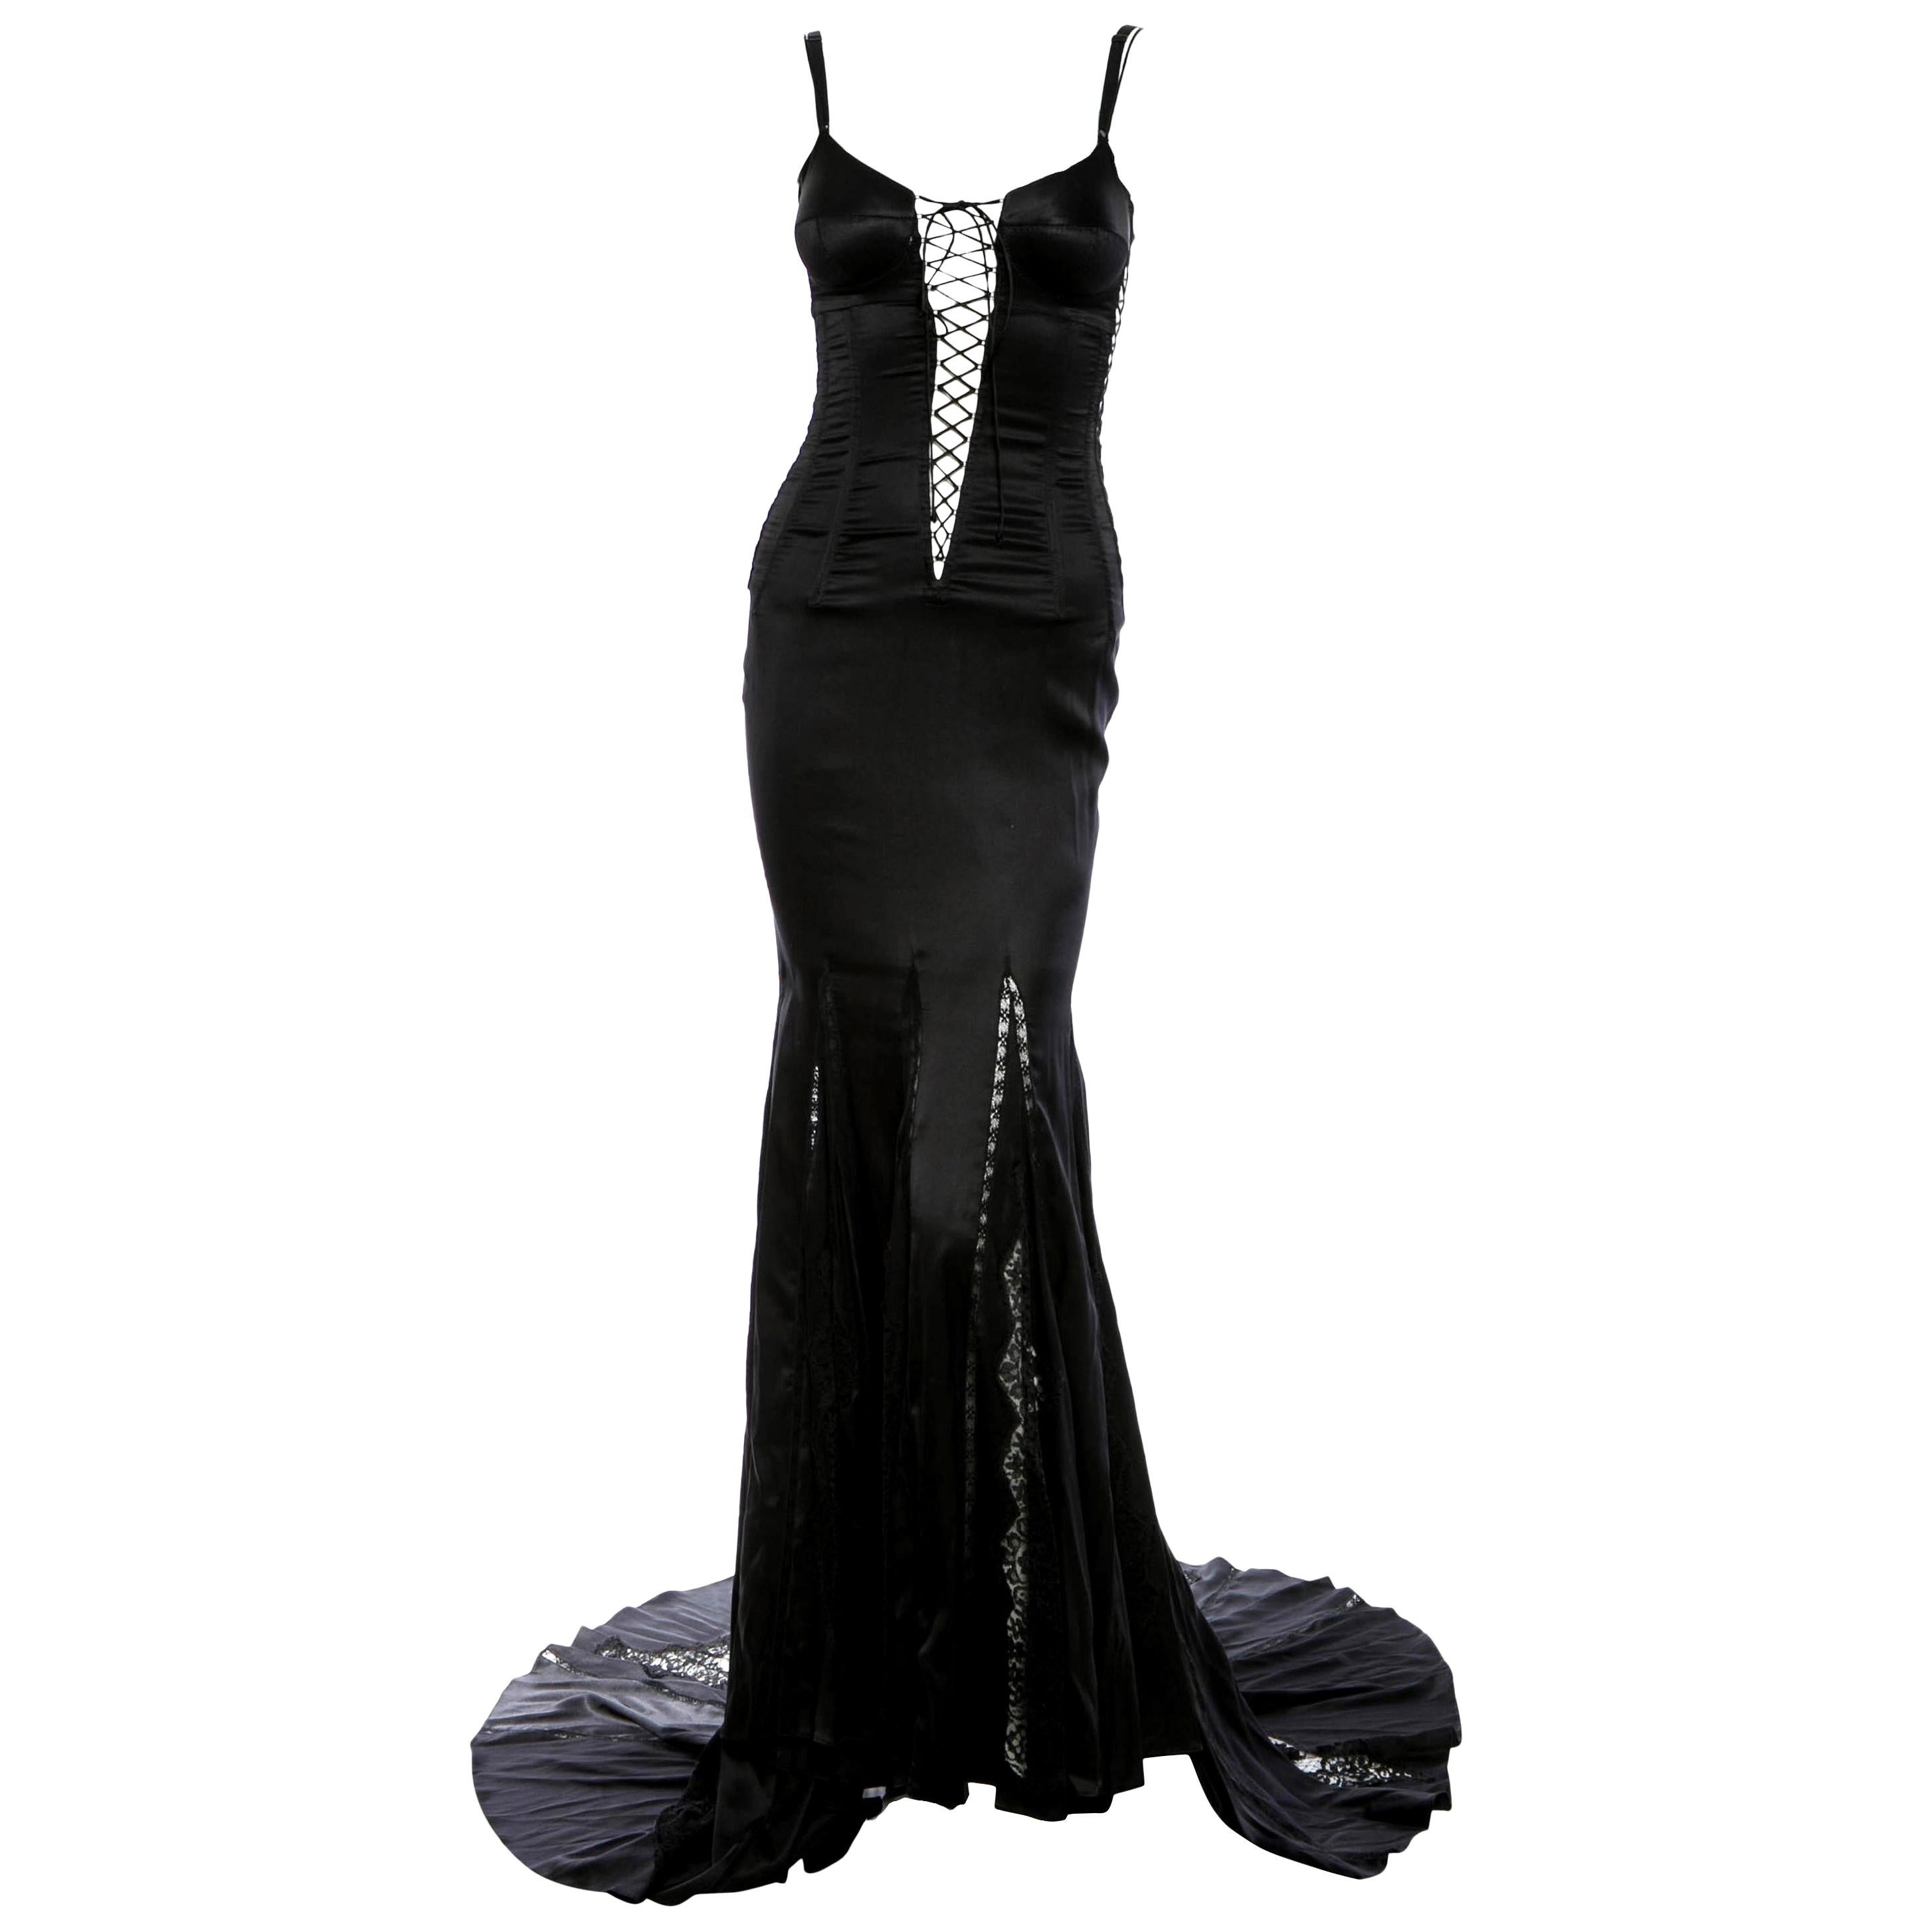 Dolce & Gabbana Black Lace Up Bond Girl Silk Evening Dress Gown